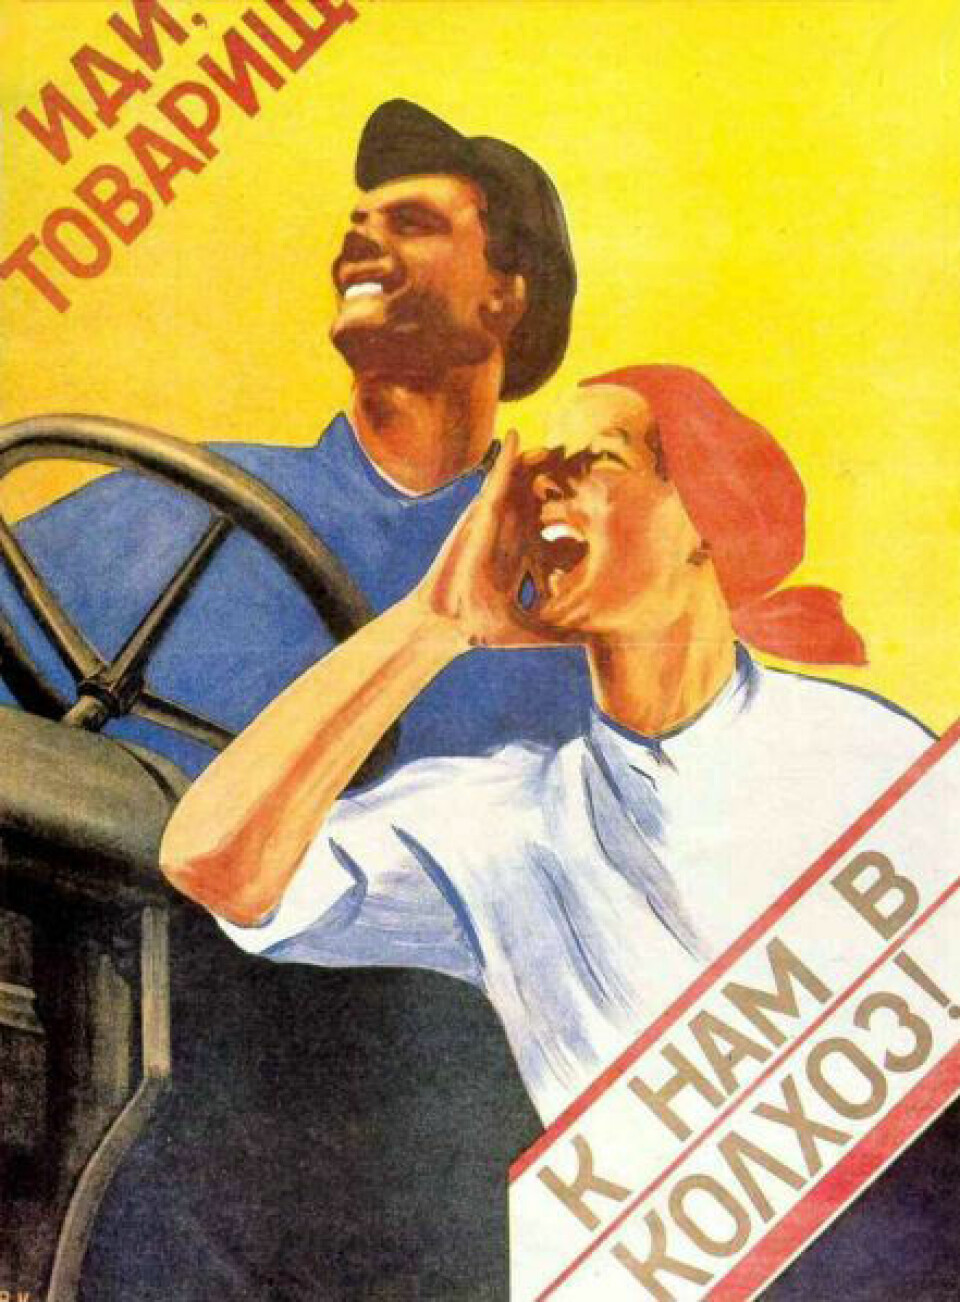 Moderniseringen av Sovjetunionen gjennom femårsplanene fra 1928 ble et løft for norsk eksport. Bildet viser plakat med propoganda for kollektivbruk (kolkos). Teksten lyder:' Kamerat, slutt deg til vår kolkos!'. Tvangskollektivisering har blitt stående som en av de mørke sidene av Sovjetunionens historie under Stalin. (Foto: Wikipedia Commons).